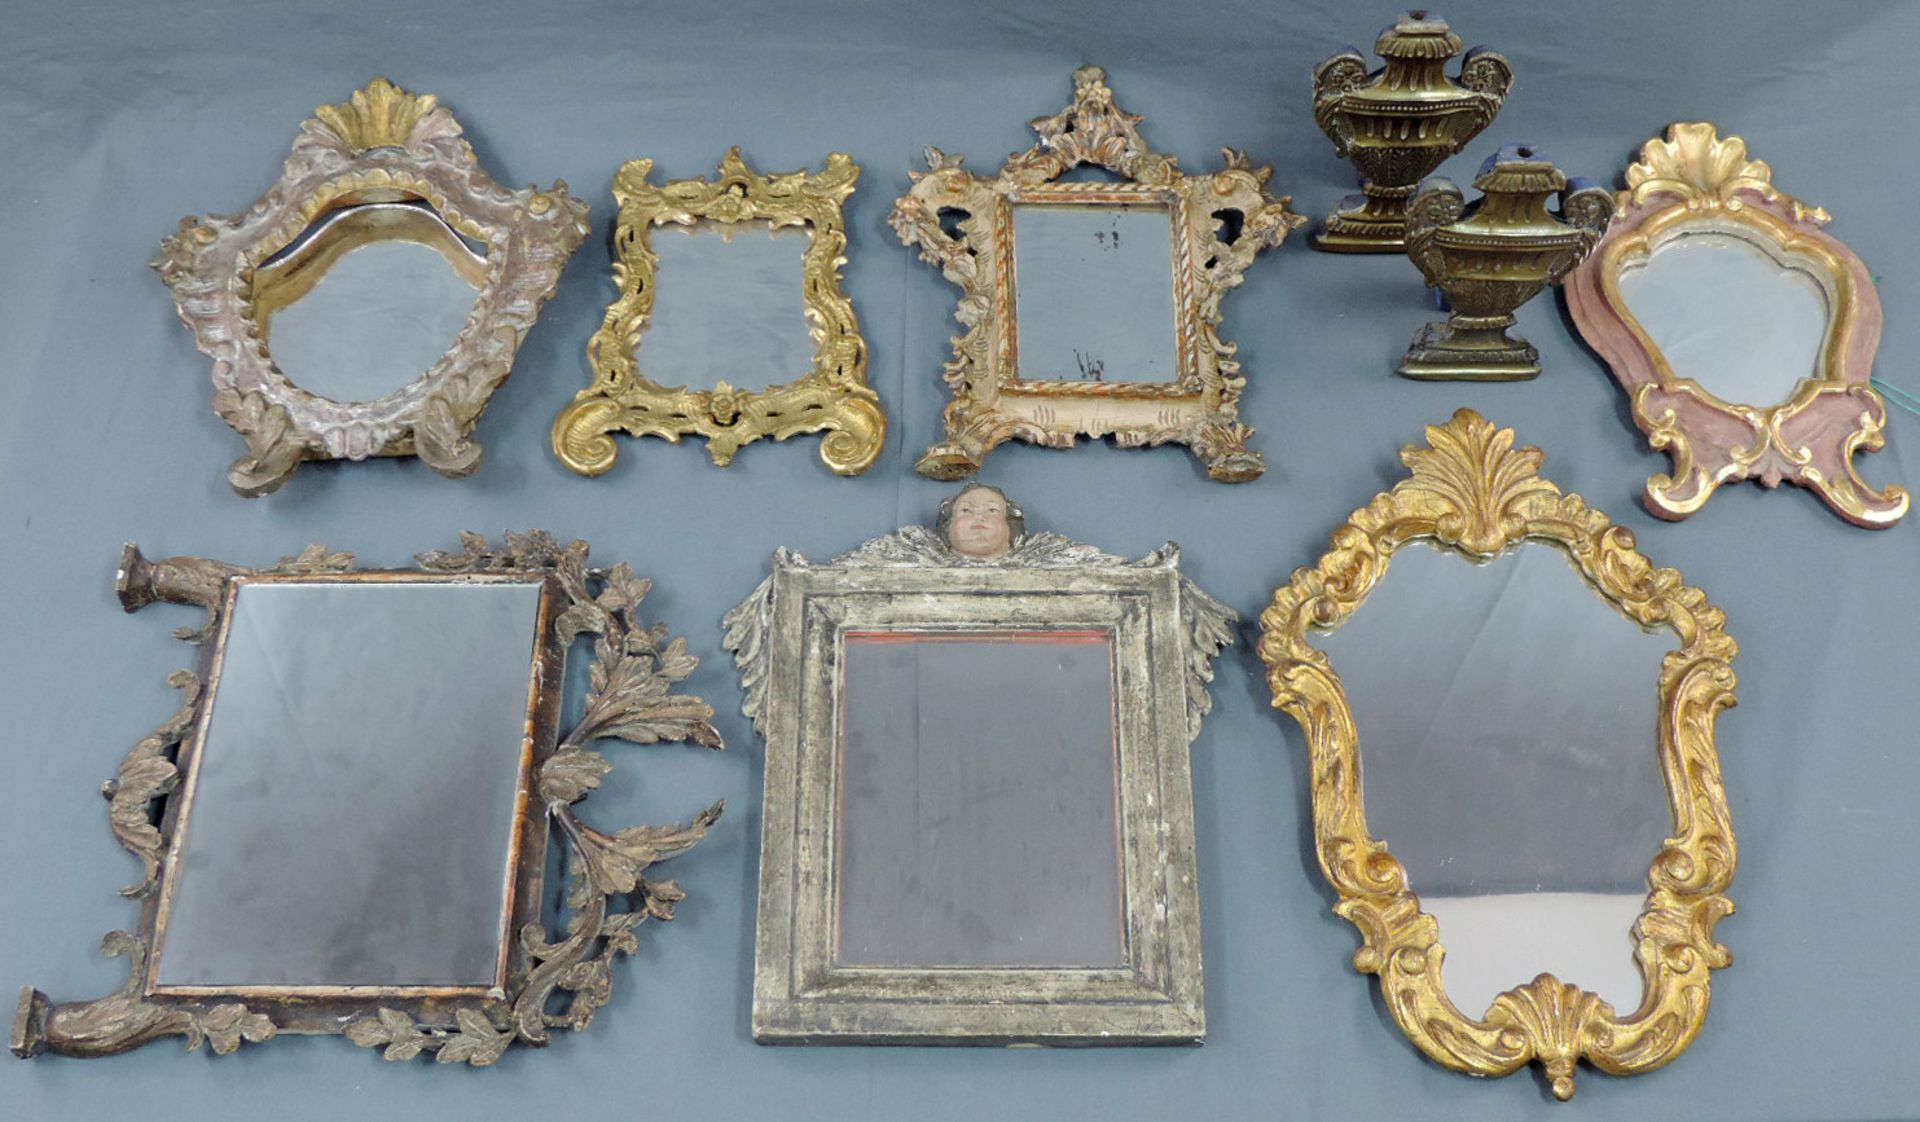 7 Spiegel und 2 Pokale als Standreliefs.Bis 49,5 cm x 31,5 cm. Spiegel mit geschnitzten